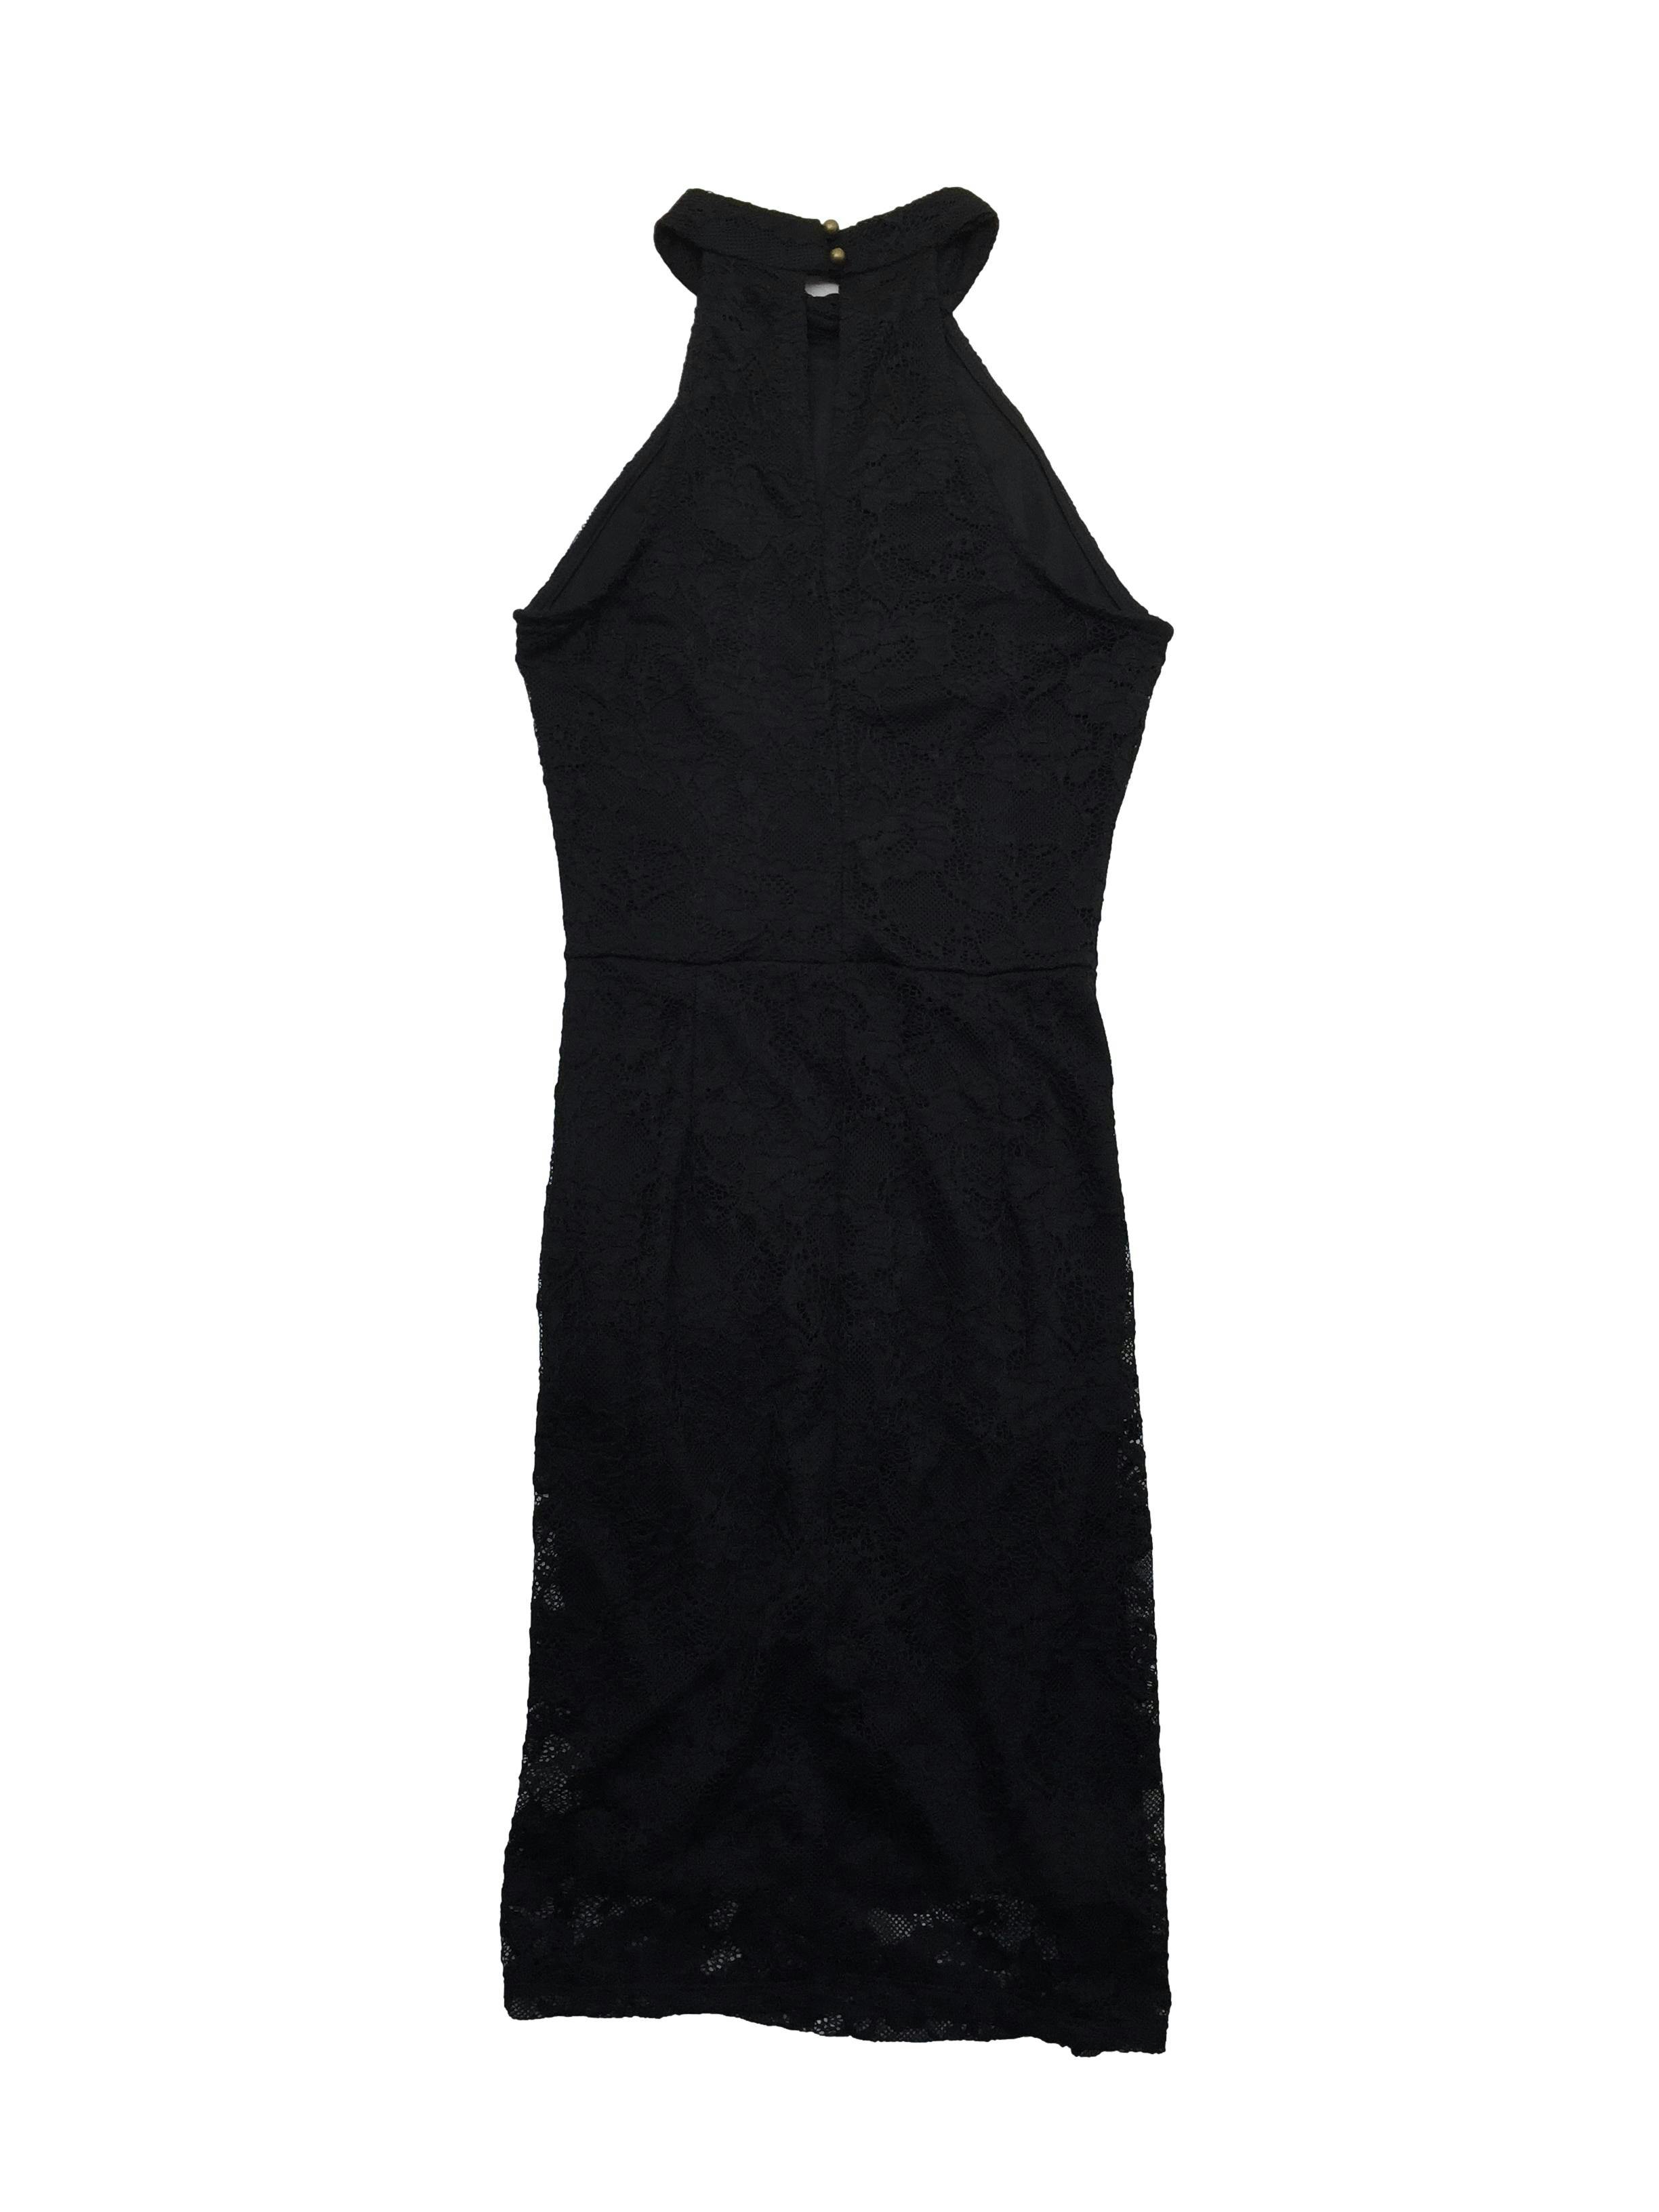 Vestido negro de encaje con forro, cuello halter con botones posteriores y cierre lateral invisible. Busto 72cm sin estirar, Largo 85cm.